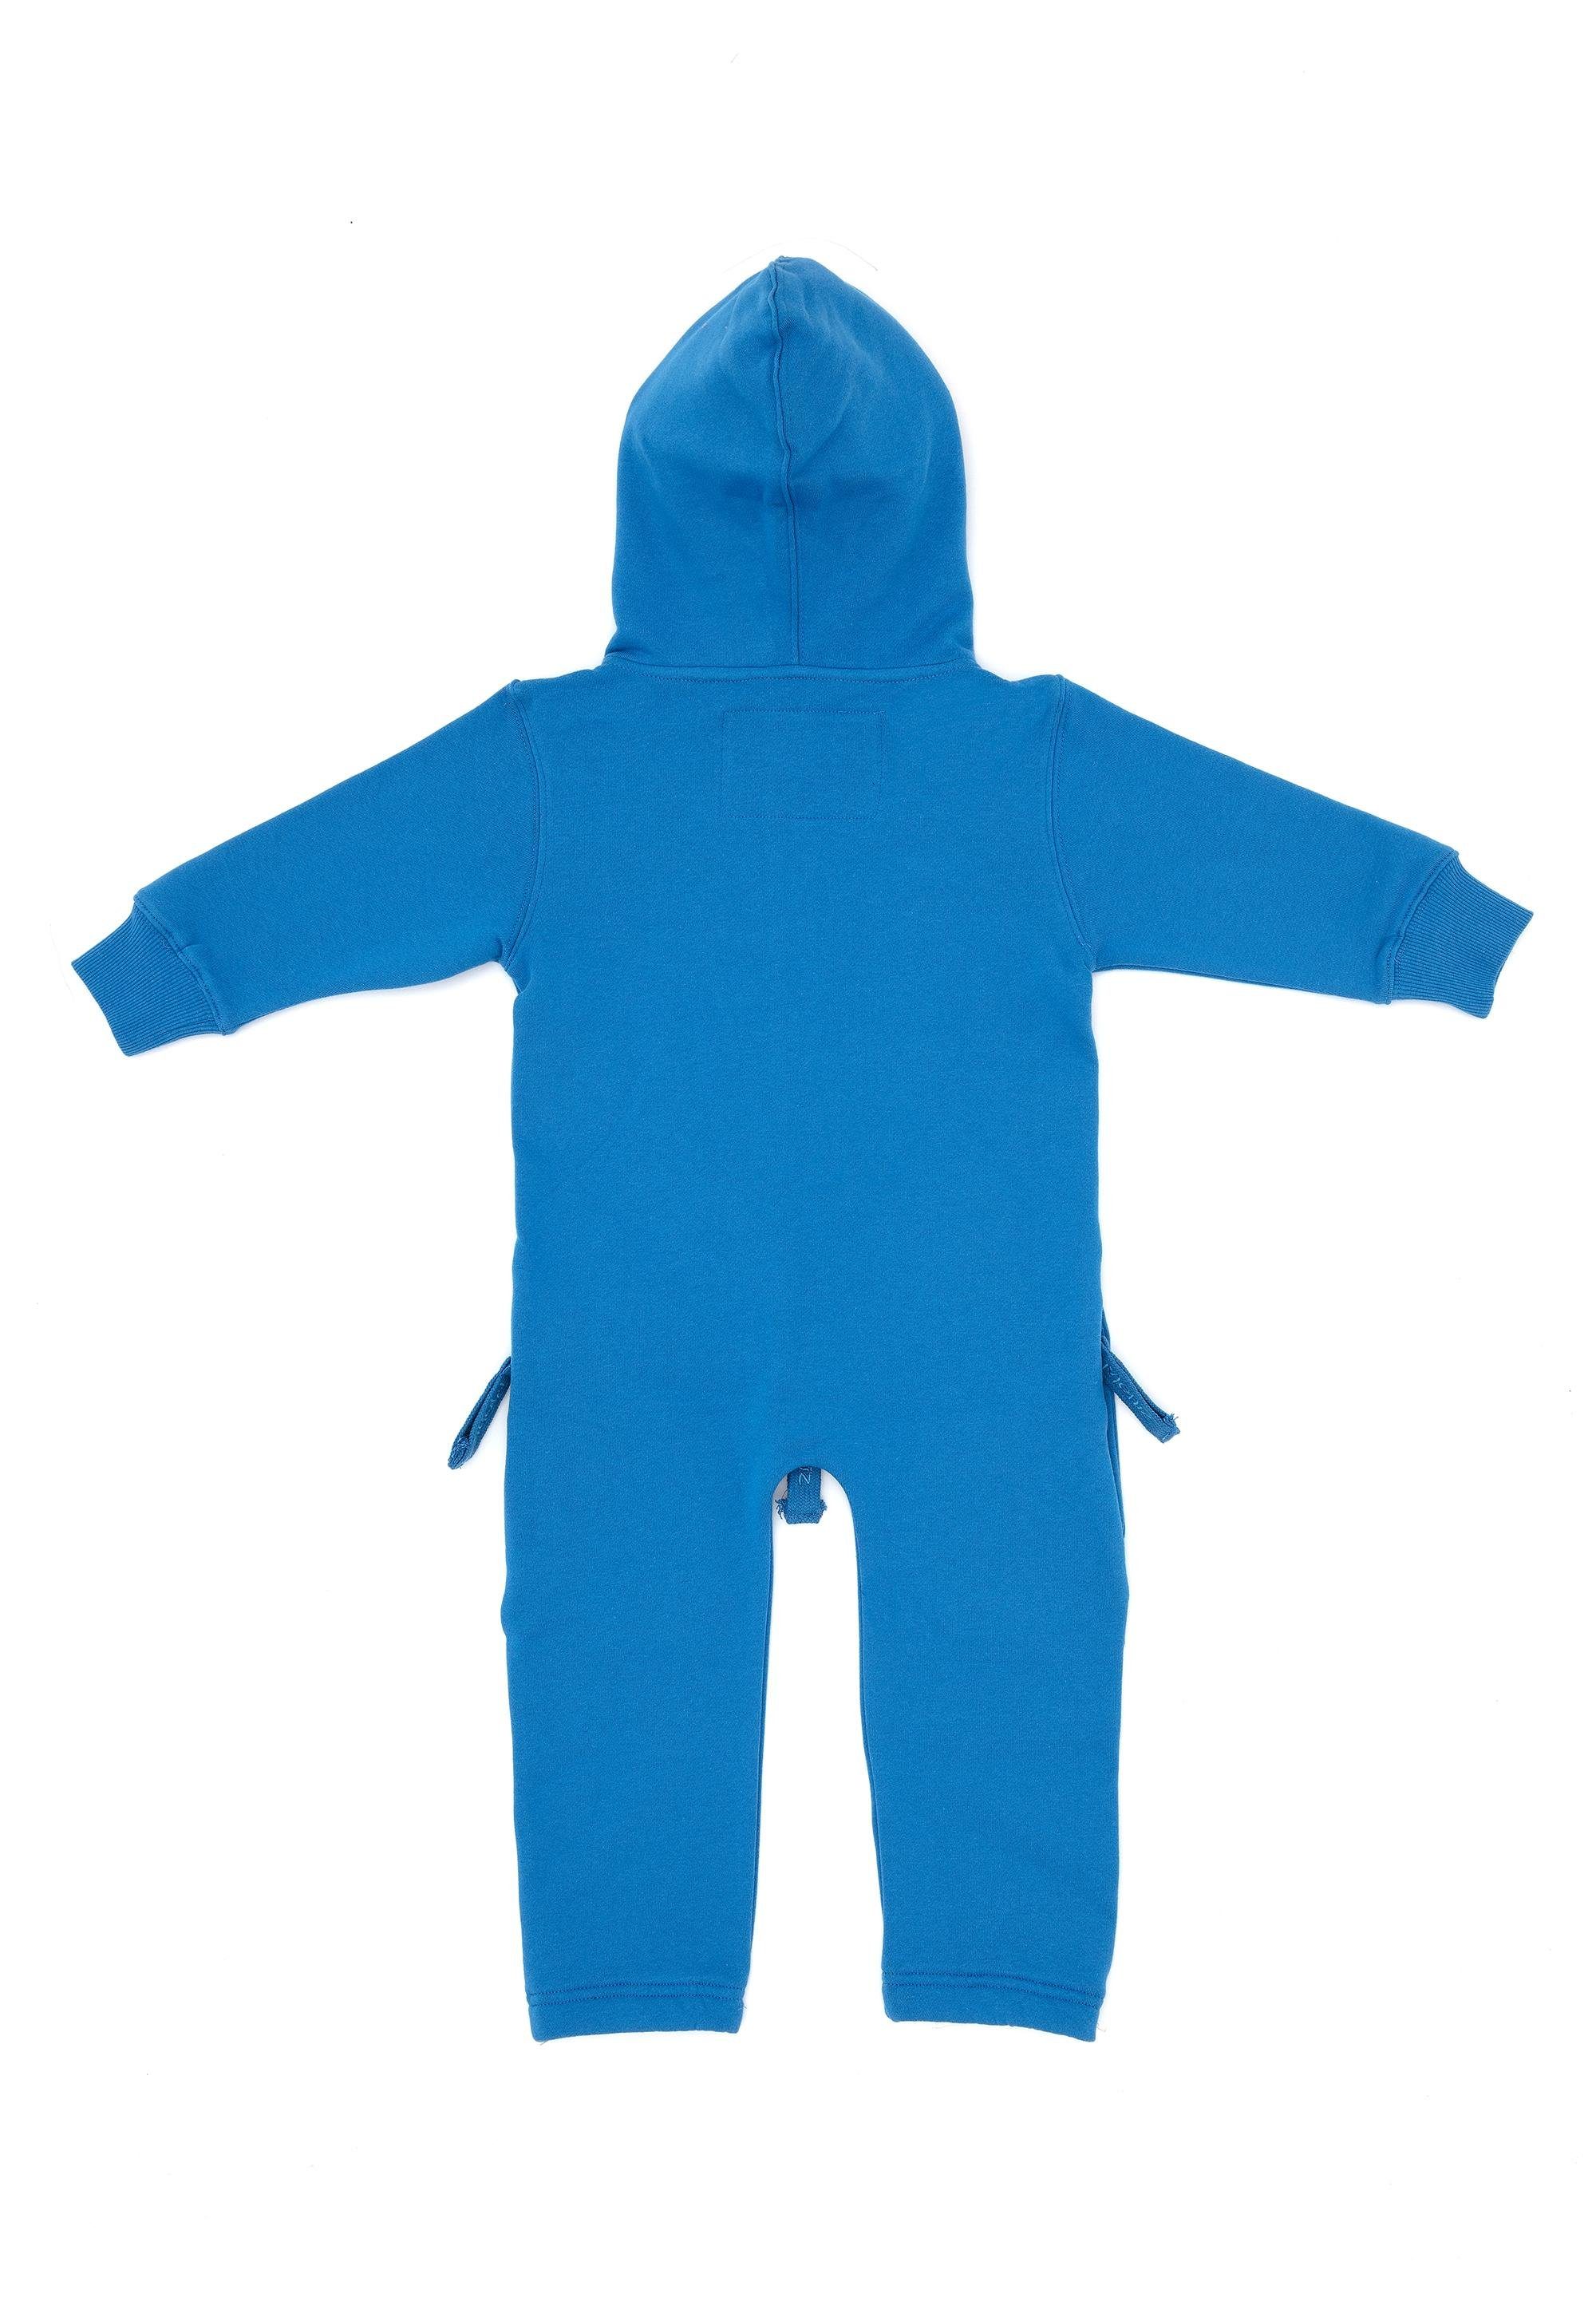 Moniz Jumpsuit aus kuschelig Material blau-blau weichem